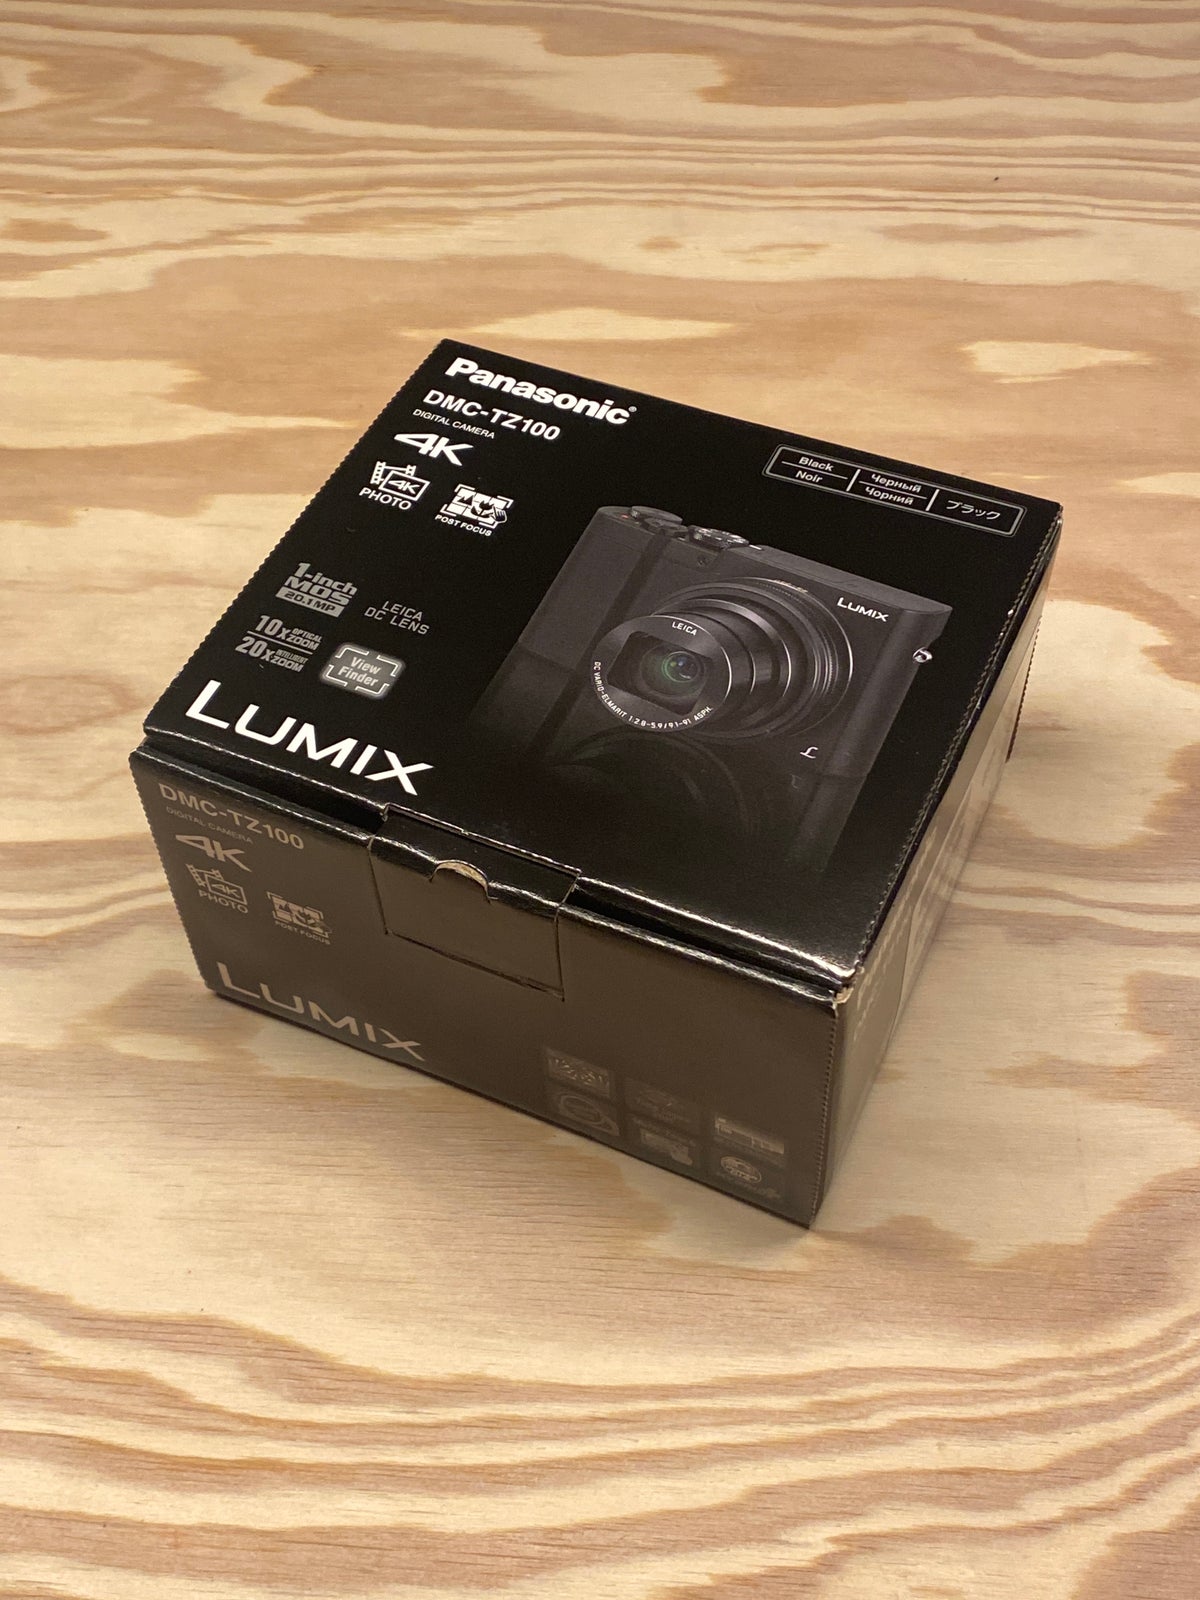 Lumix, DCM-TZ100, 20 megapixels